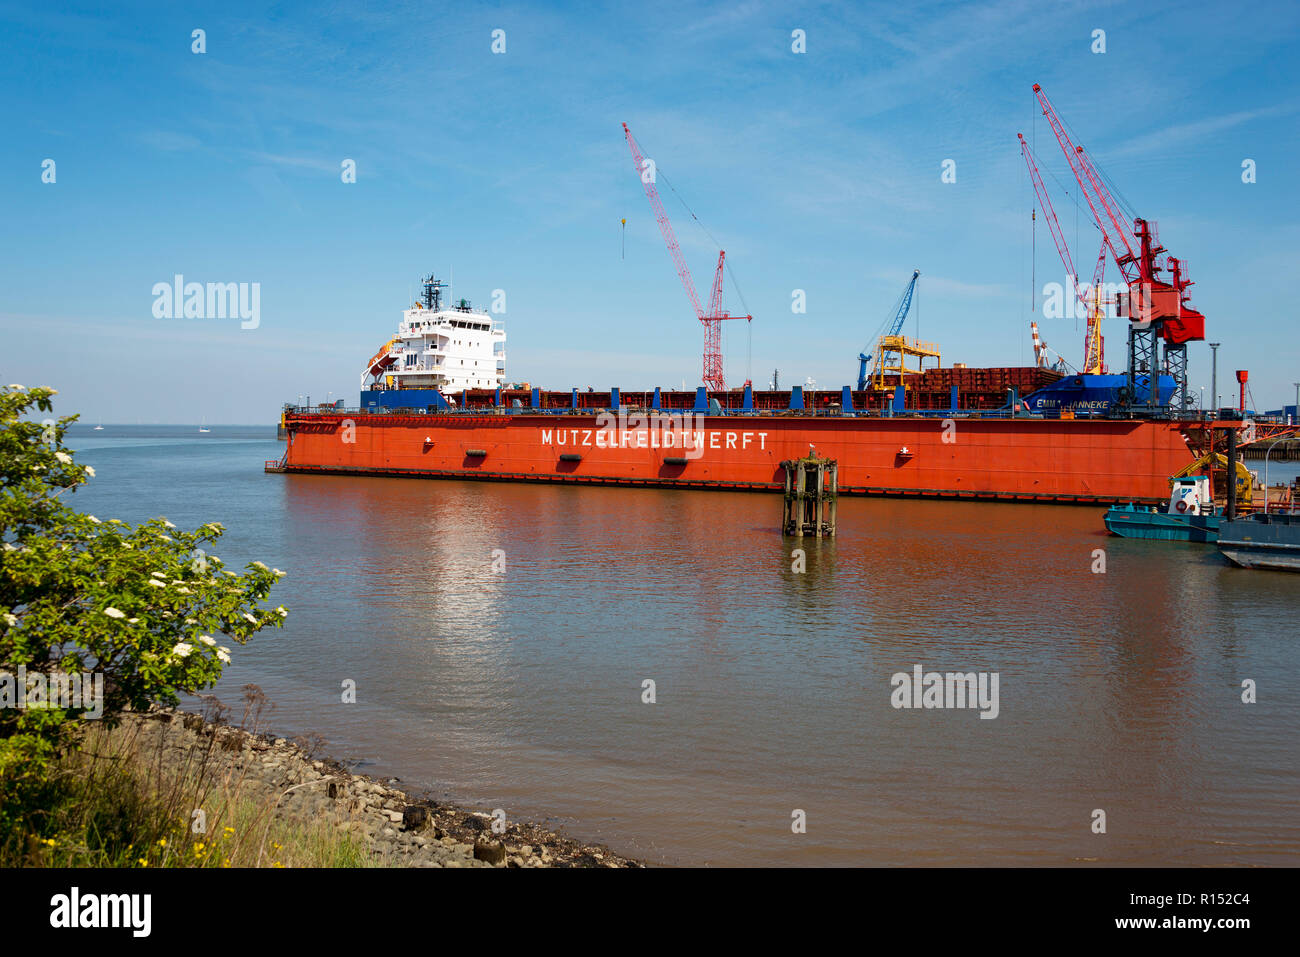 Dry dock Mutzelfeldt shipyard, Cuxhaven, Lower Saxony, Germany, Mützelfeldtwerft Stock Photo